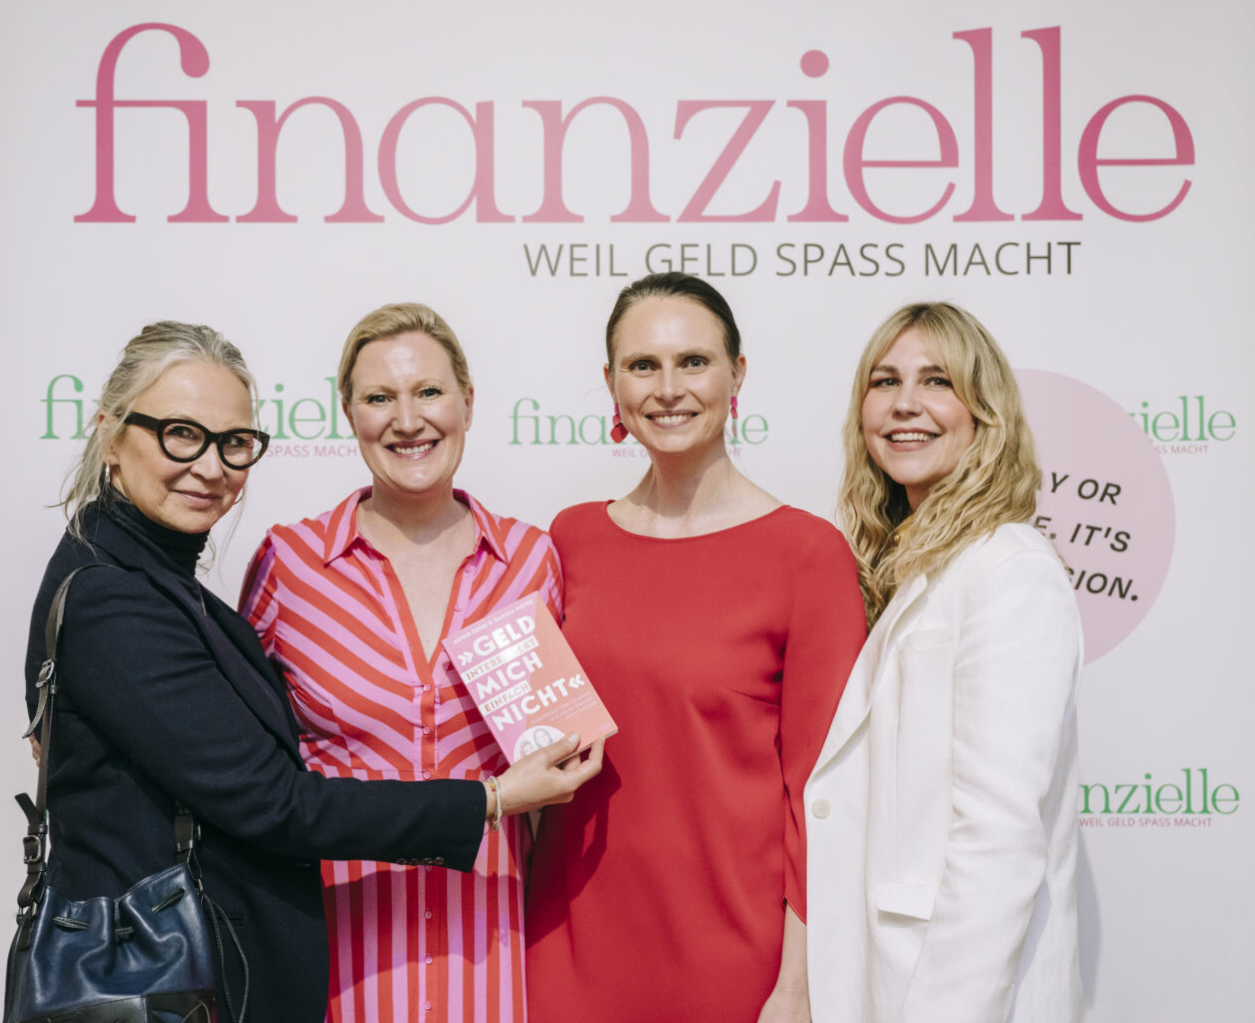 HEYDAY-Interview mit Daniela Meyer und Astrid Zehbe, den Gründerinnen der Frauenfinanz-Marke finanzielle:  Kate Merkle, Stephanie Neubert